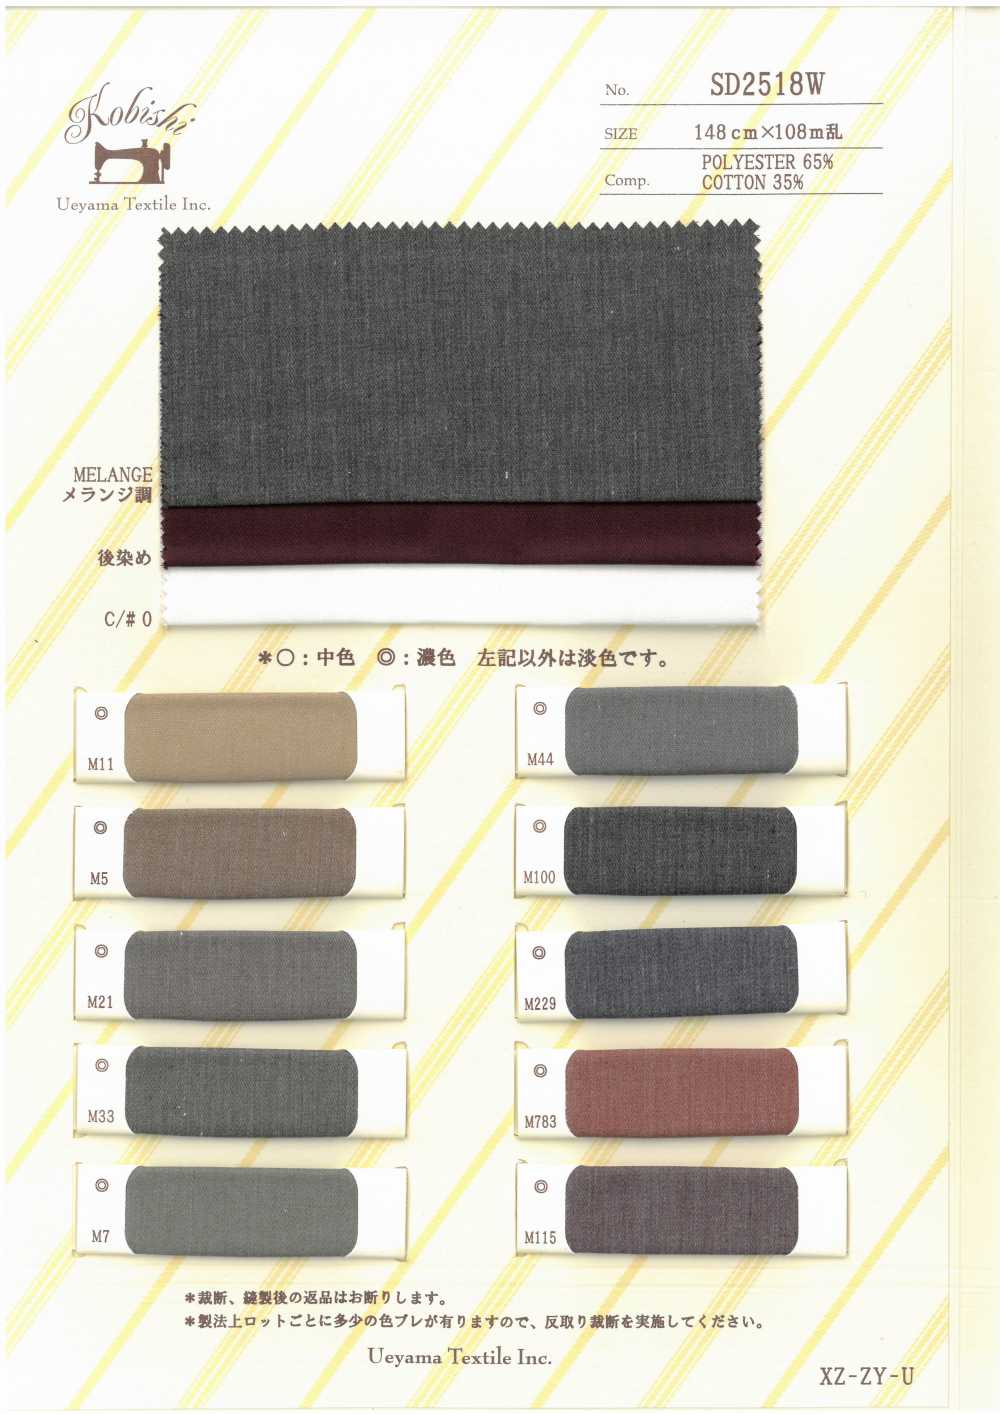 SD2518W Linha De Sarja De Algodão De Poliéster[Forro Do Bolso] Ueyama Textile